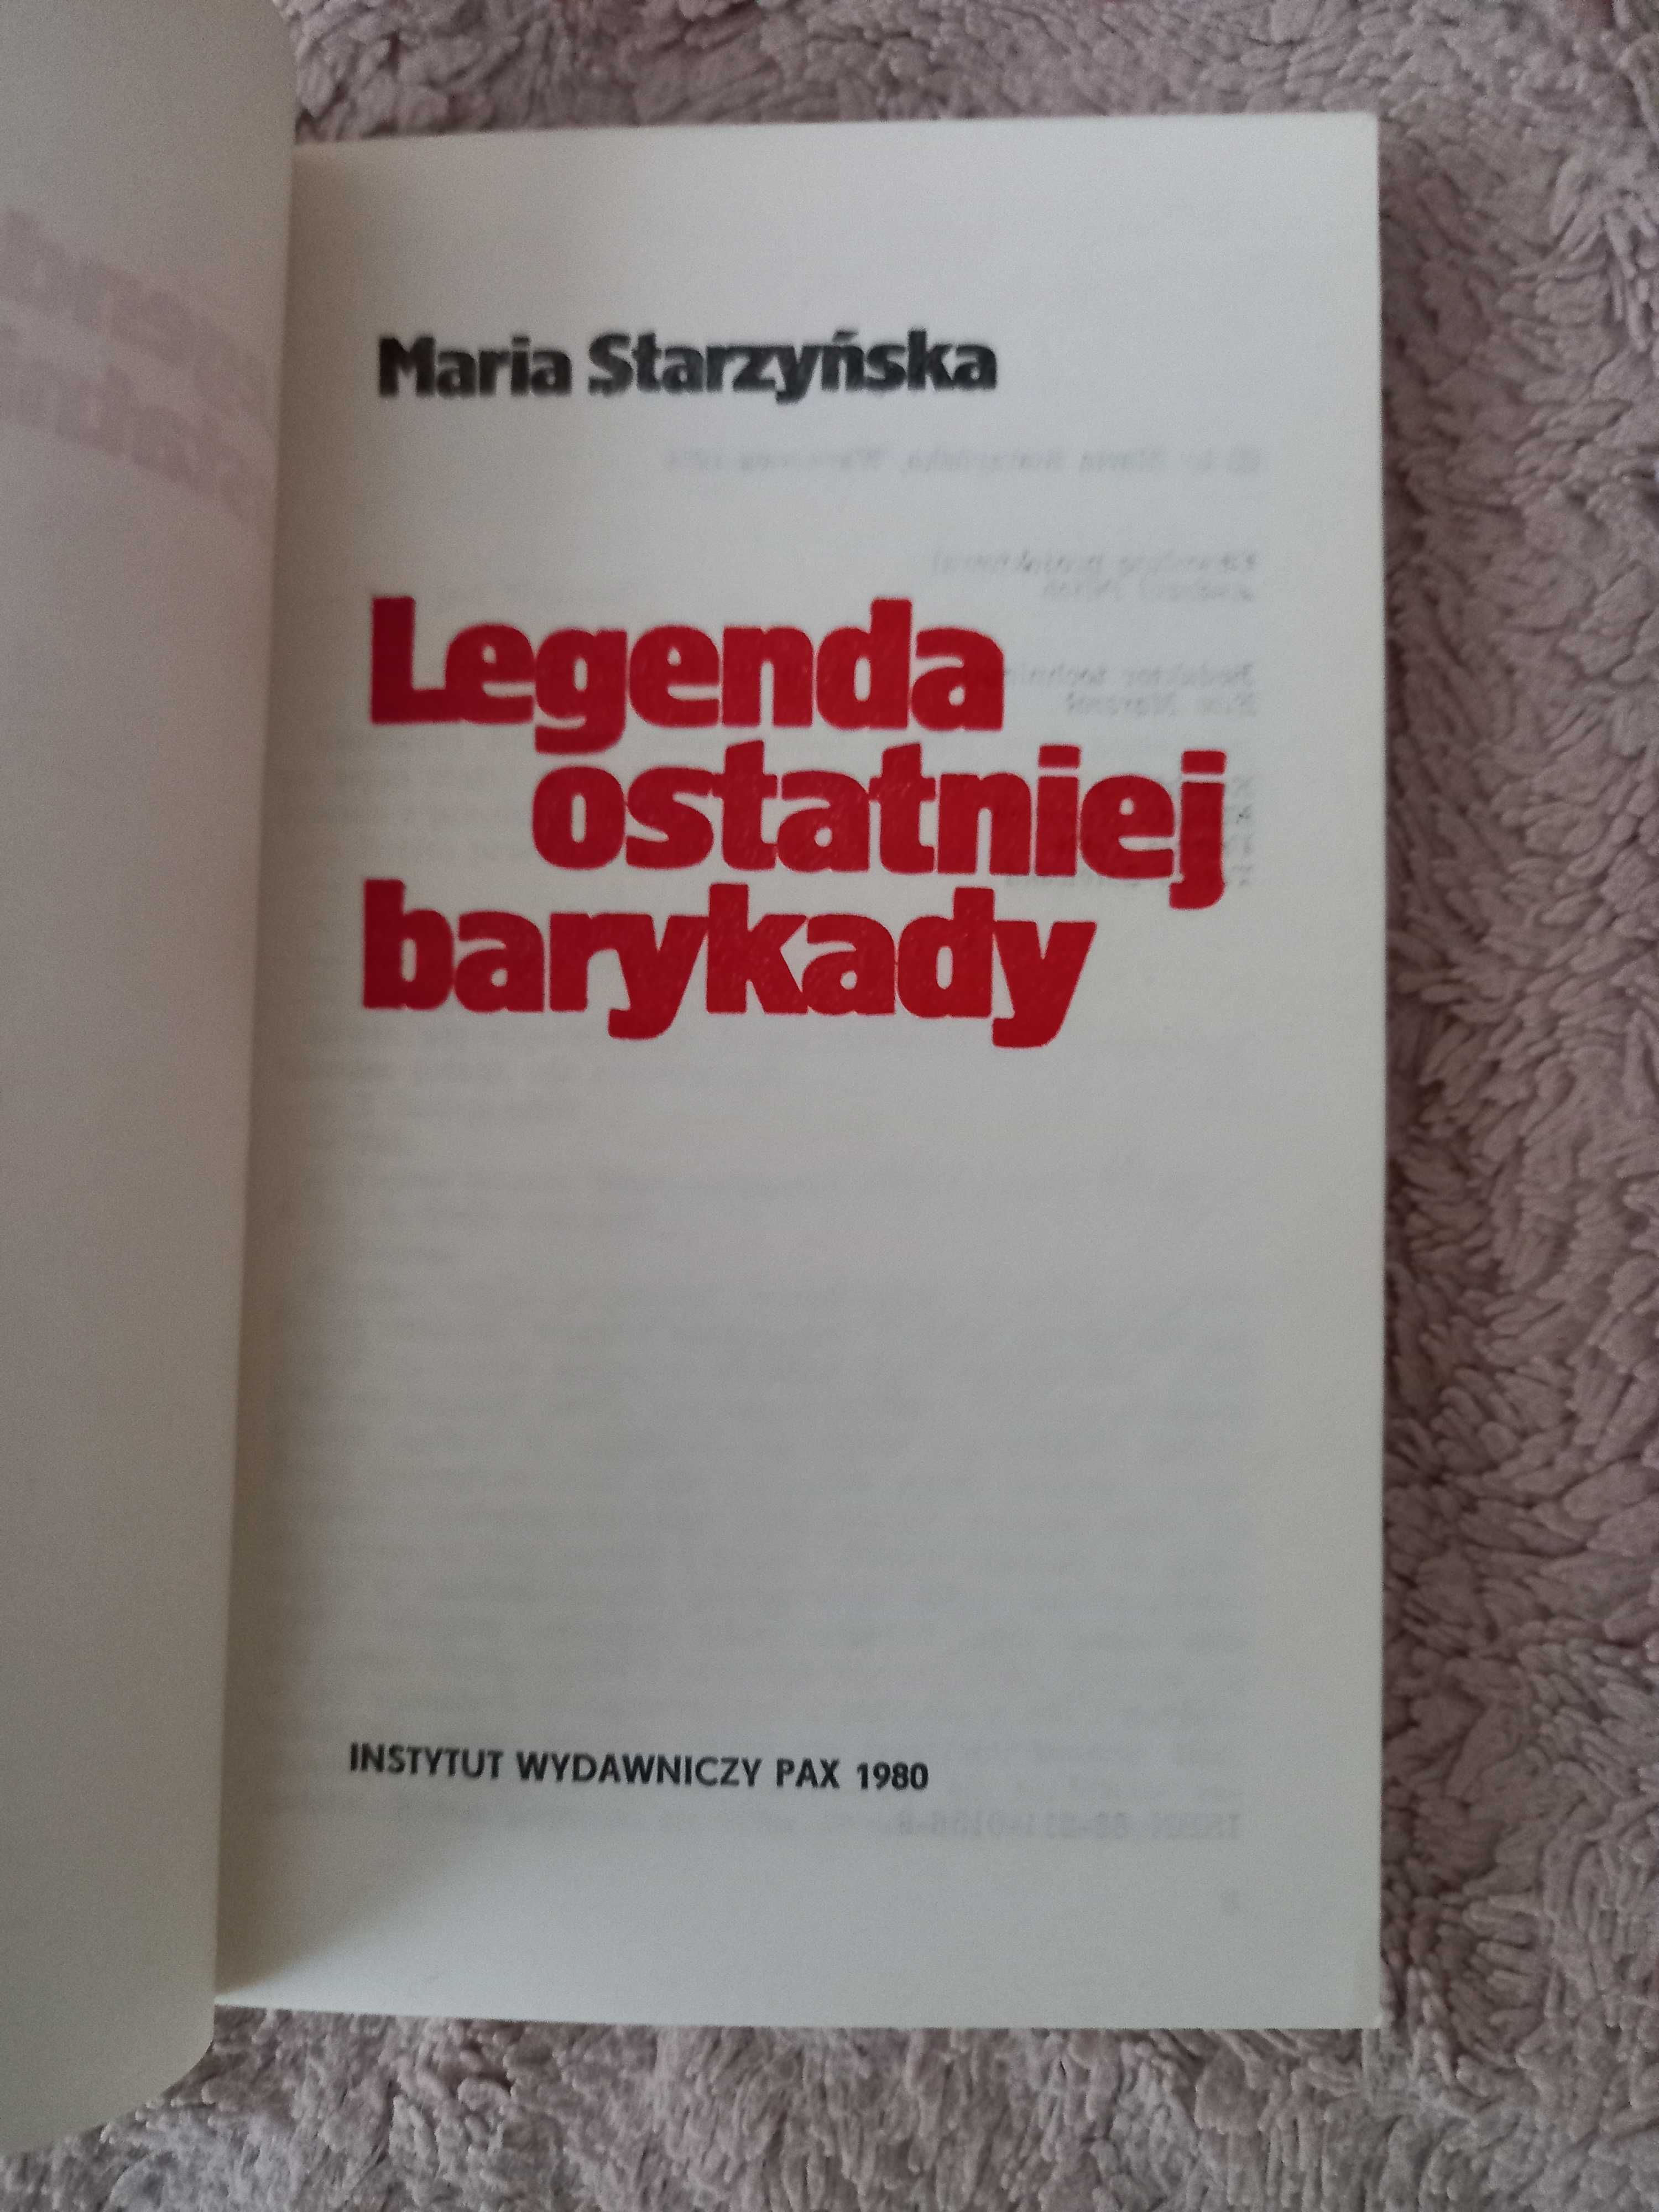 "Legenda ostatniej barykady", Maria Starzyńska